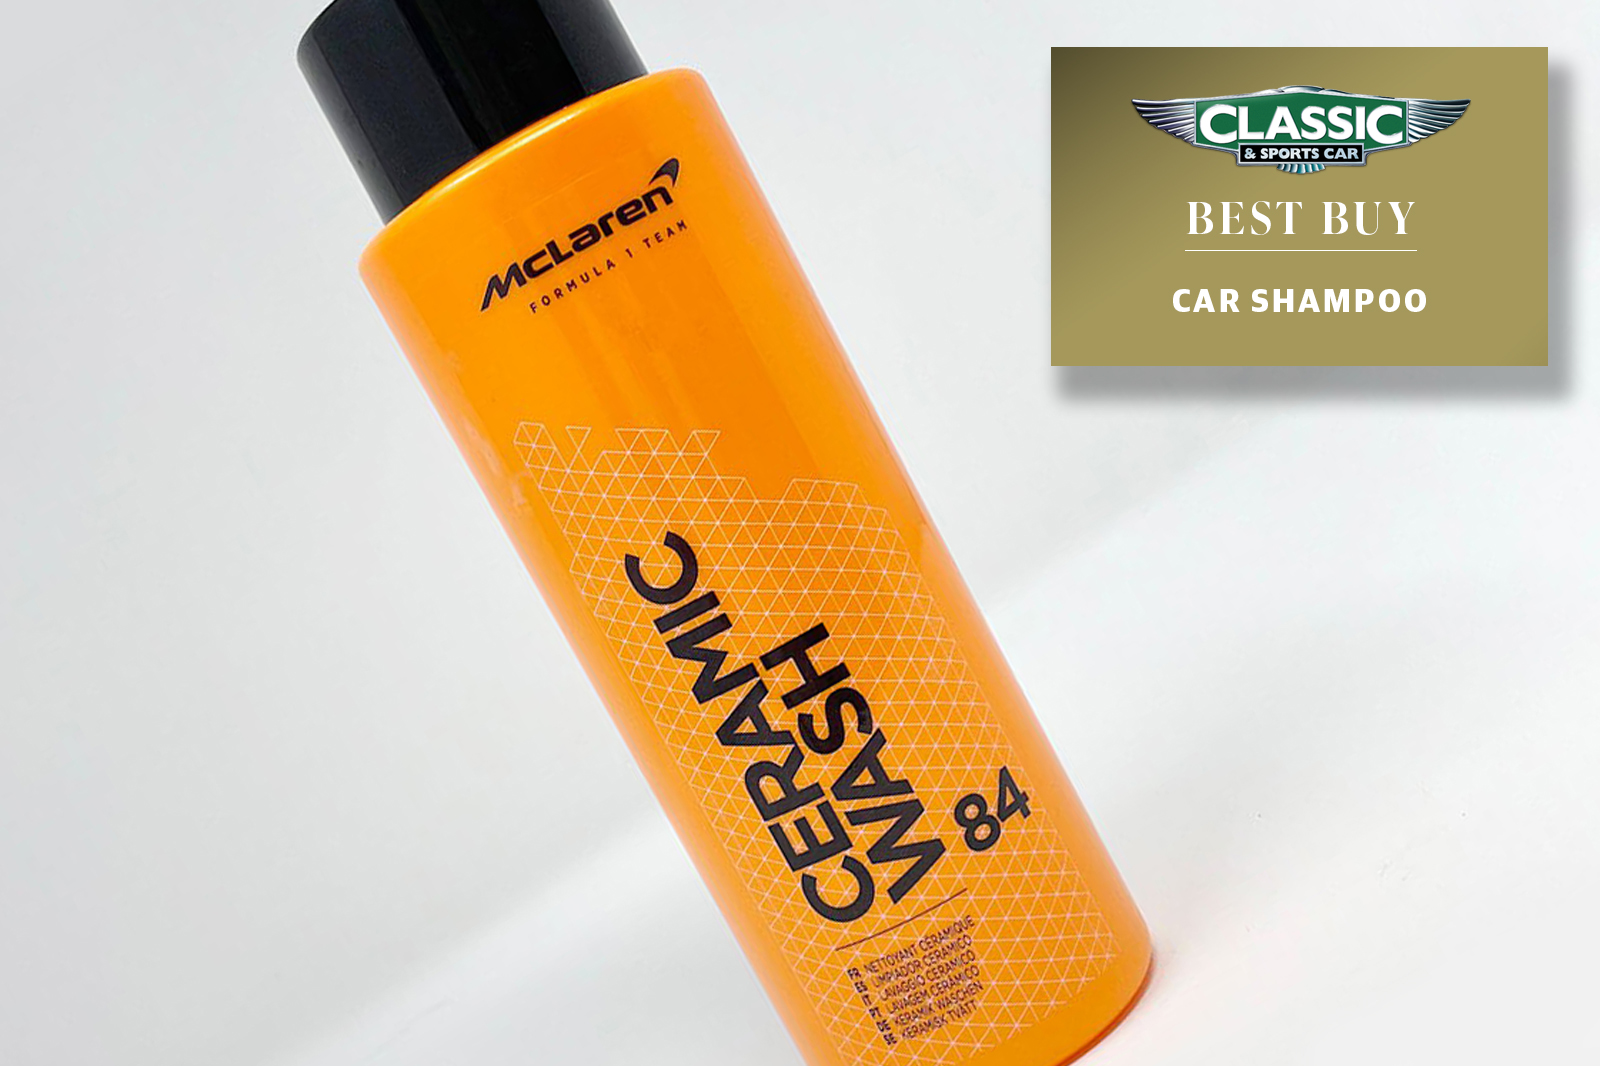 Classic & Sports Car - Best car shampoos McLaren Ceramic Shampoo review